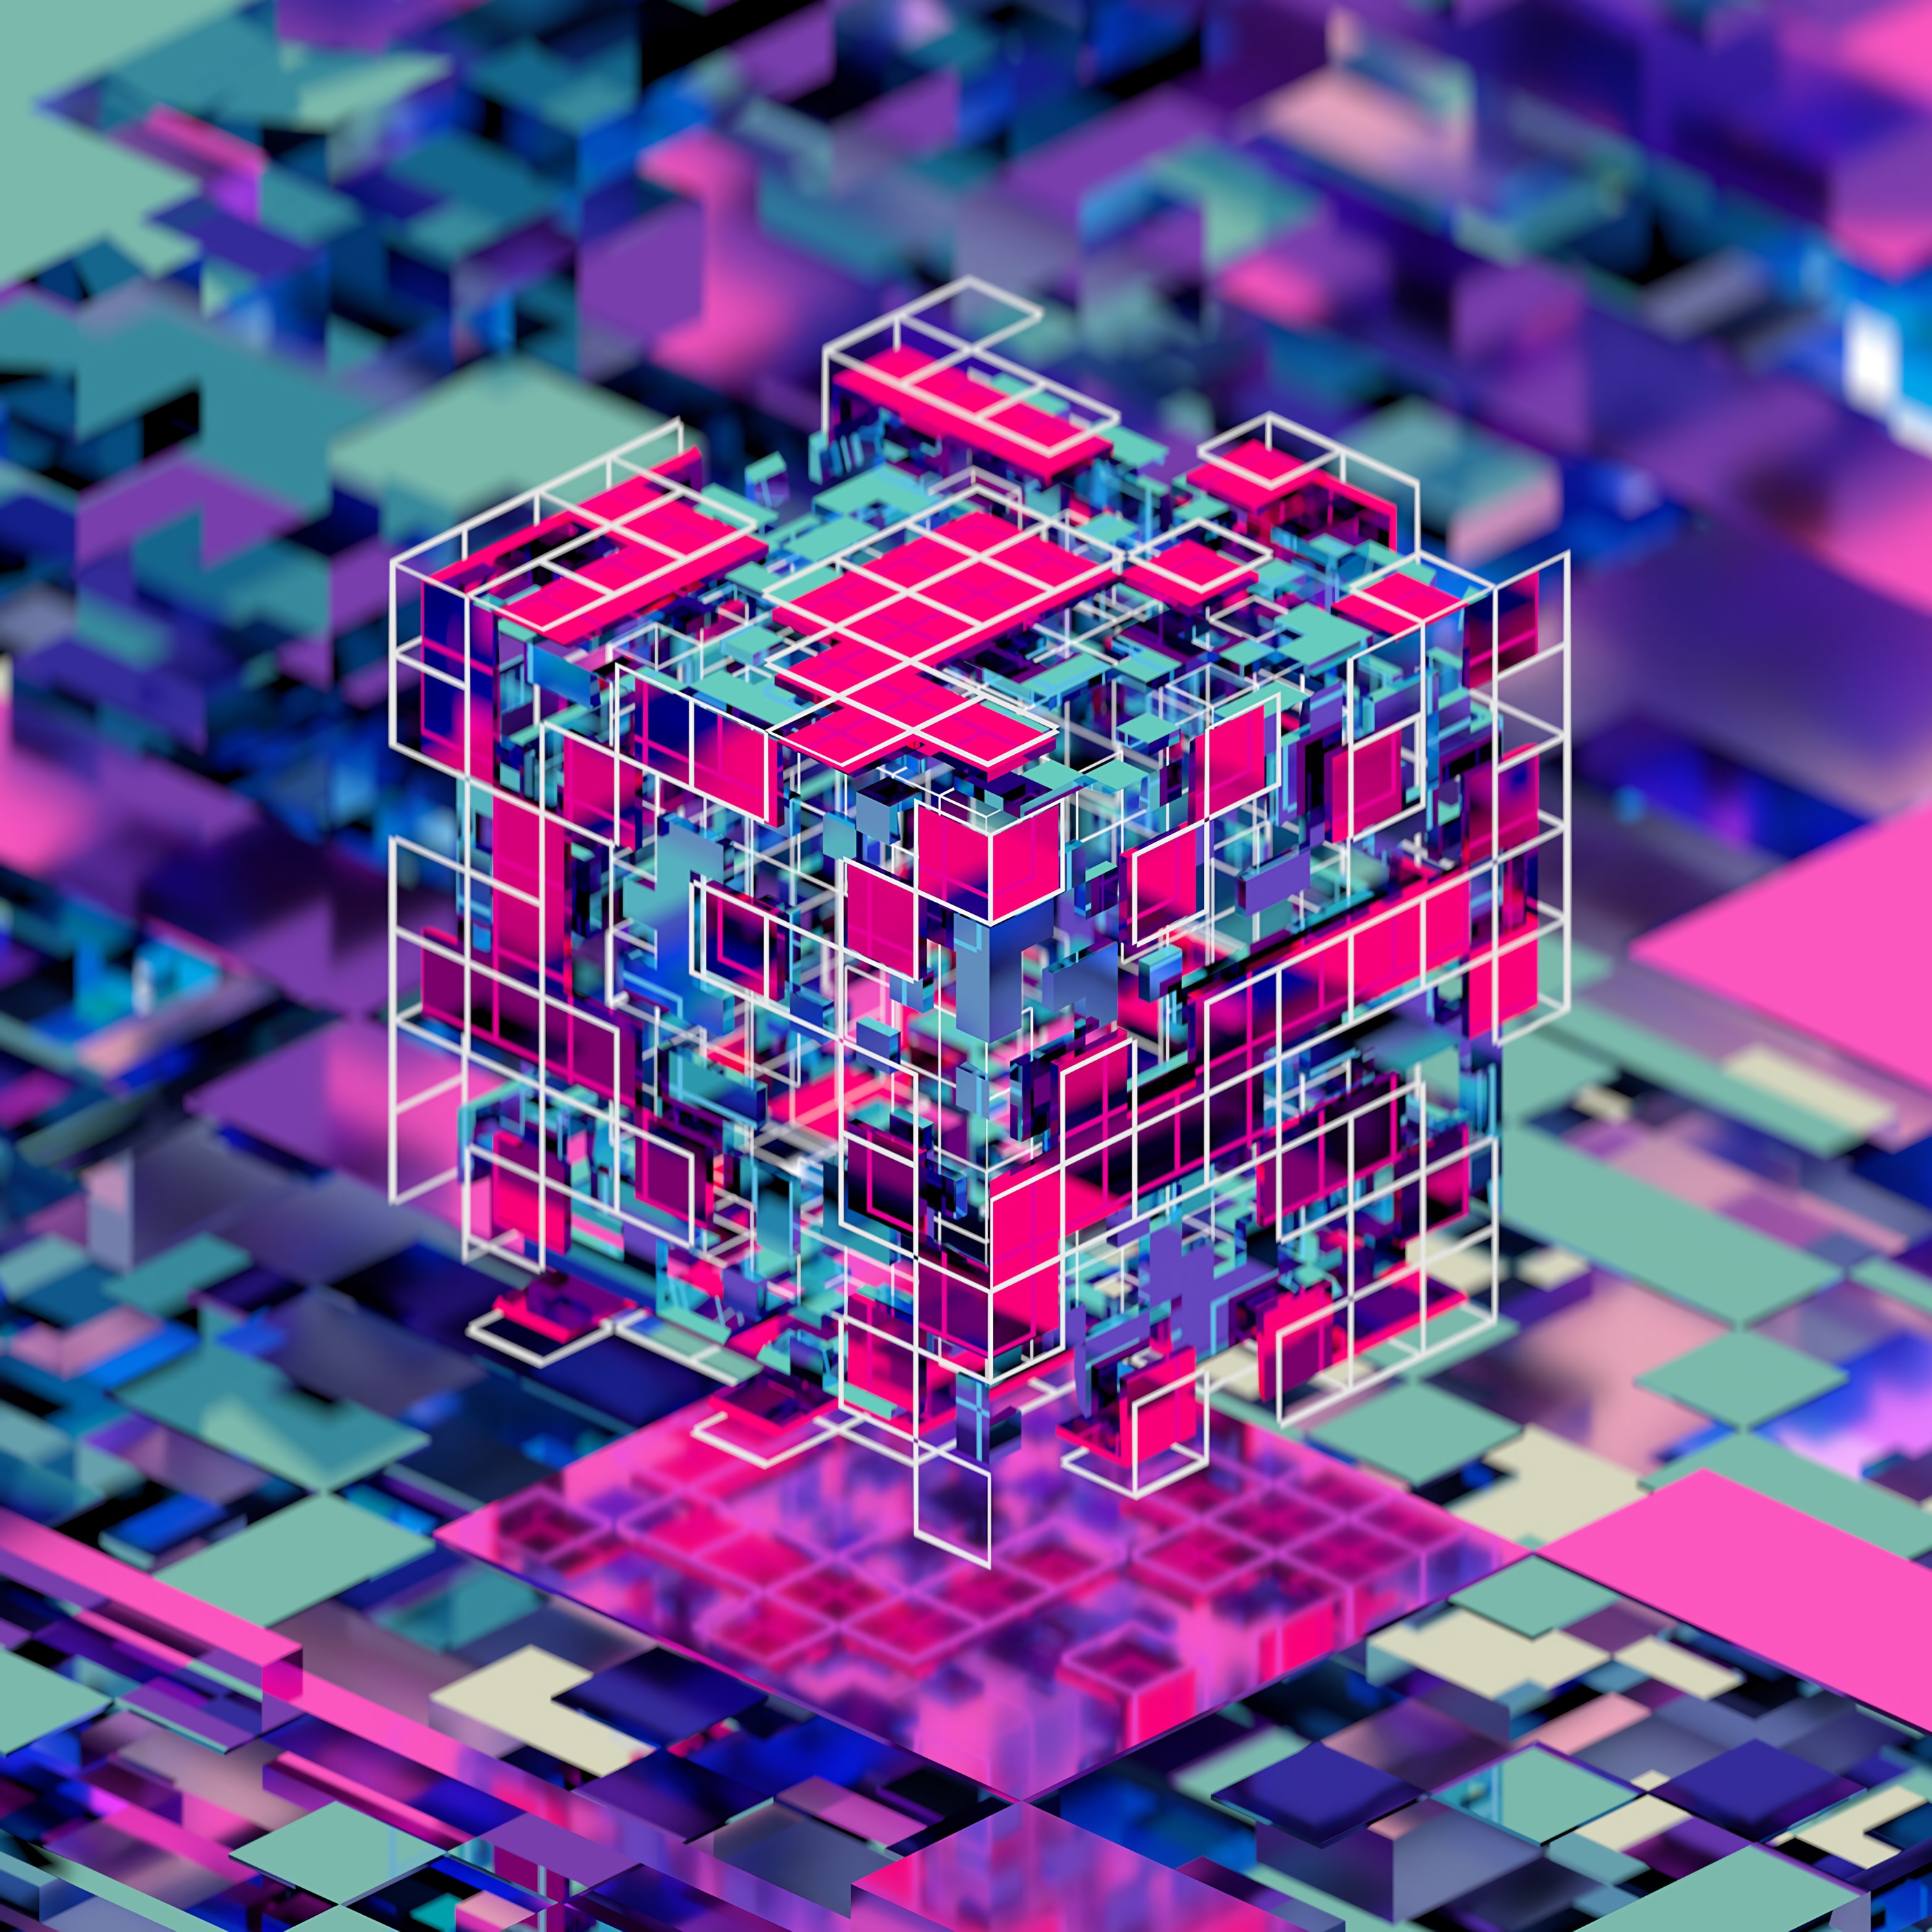 Cube download. 3d куб. Кубическая абстракция. Кубик d3. Обои кубики 3d.